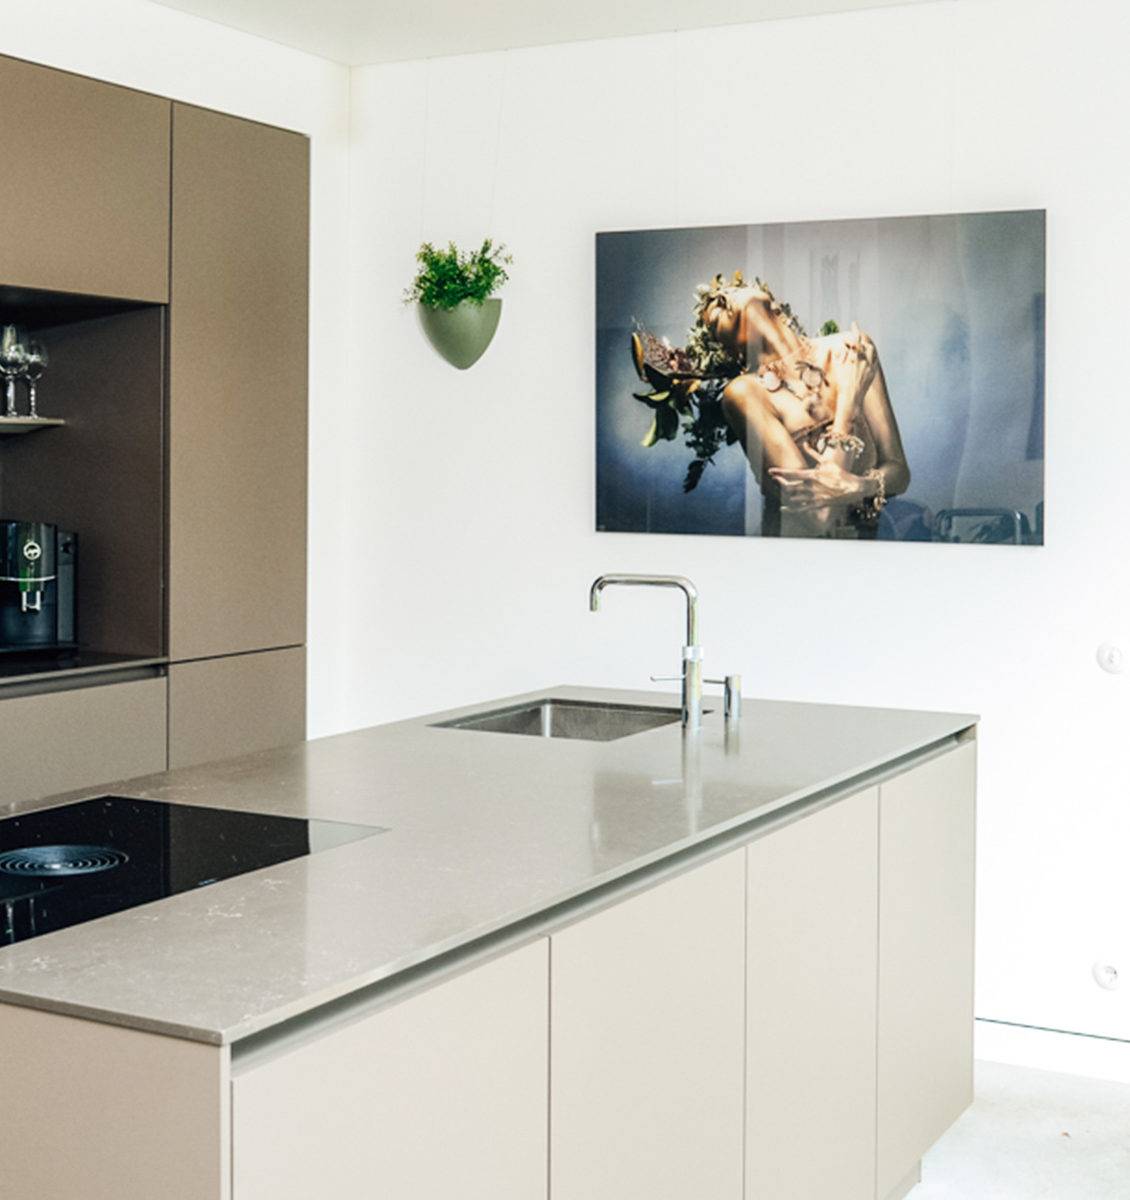 NL groot plexiglas paneel aan muur in keuken